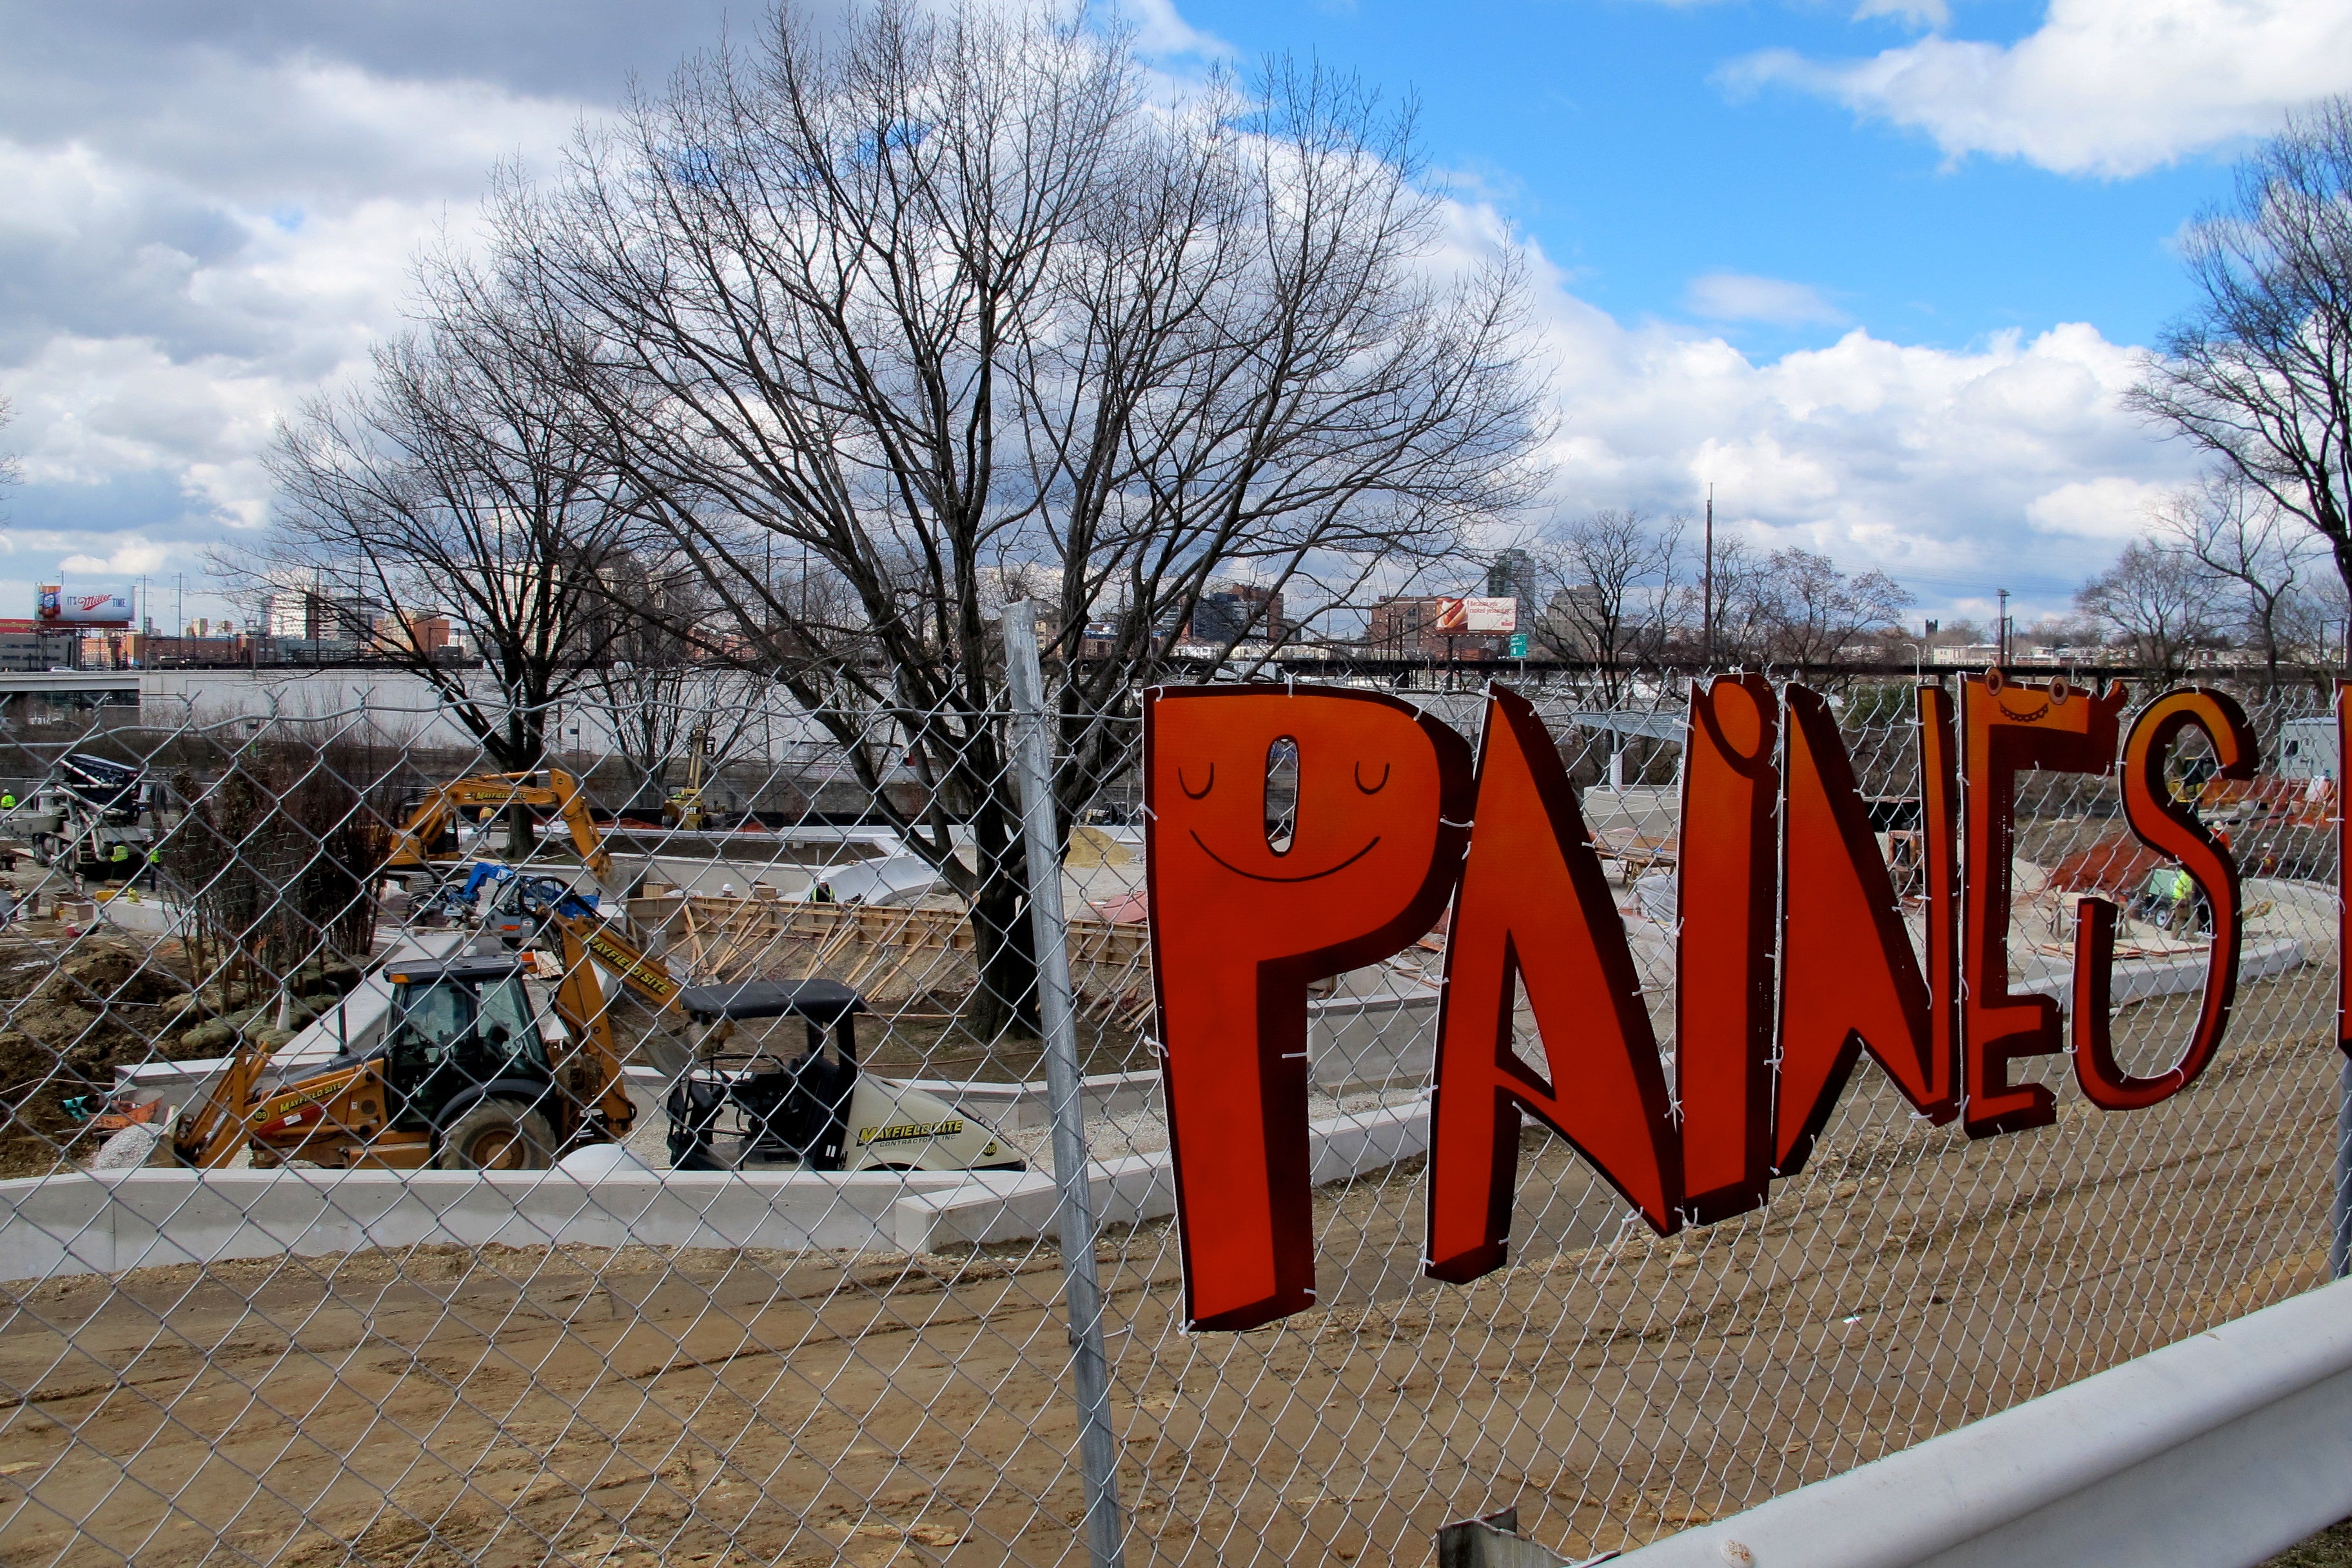 Paine's Park